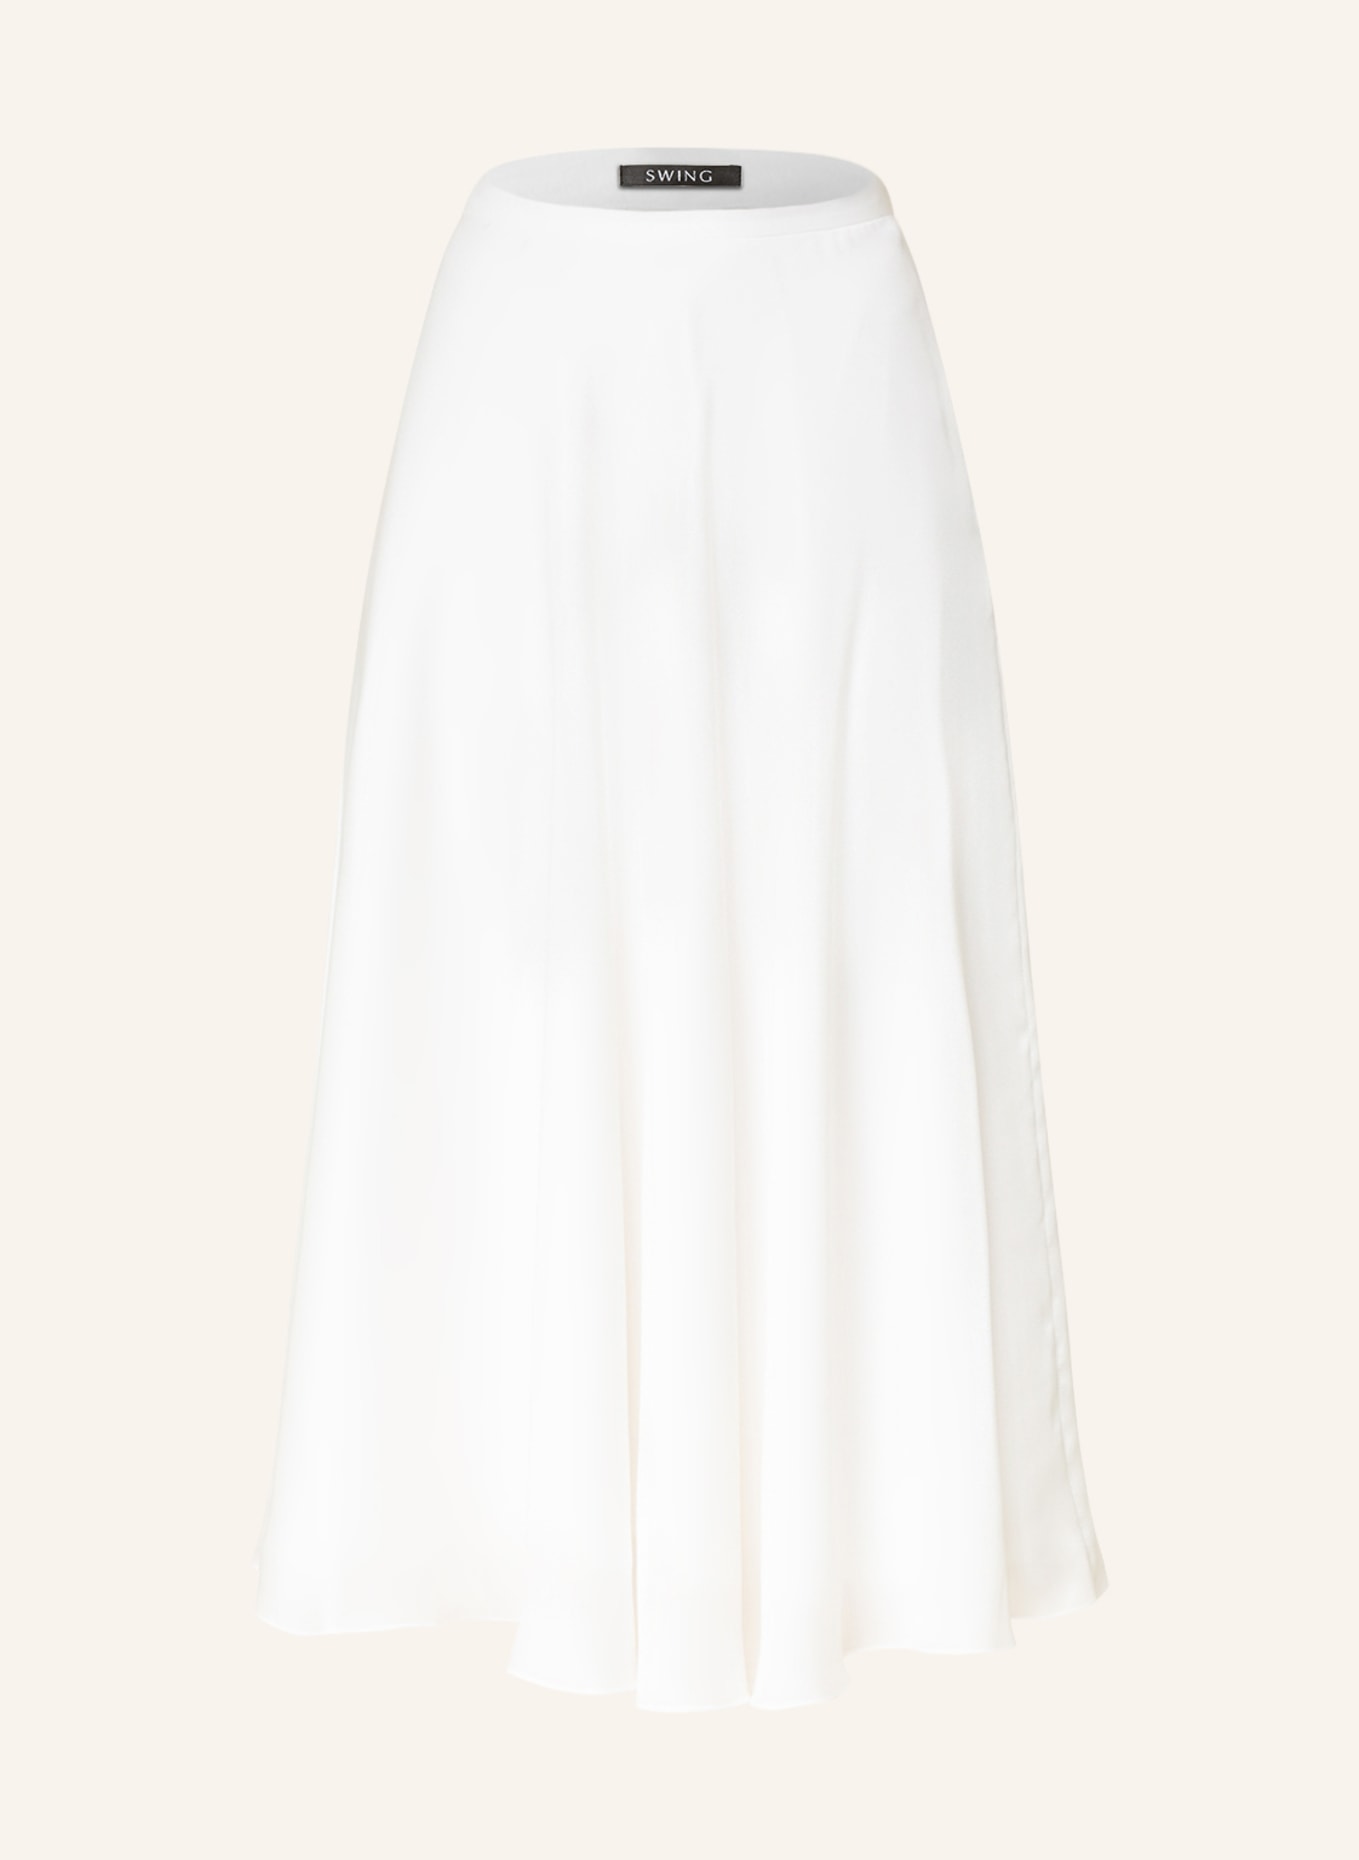 SWING Skirt , Color: WHITE (Image 1)